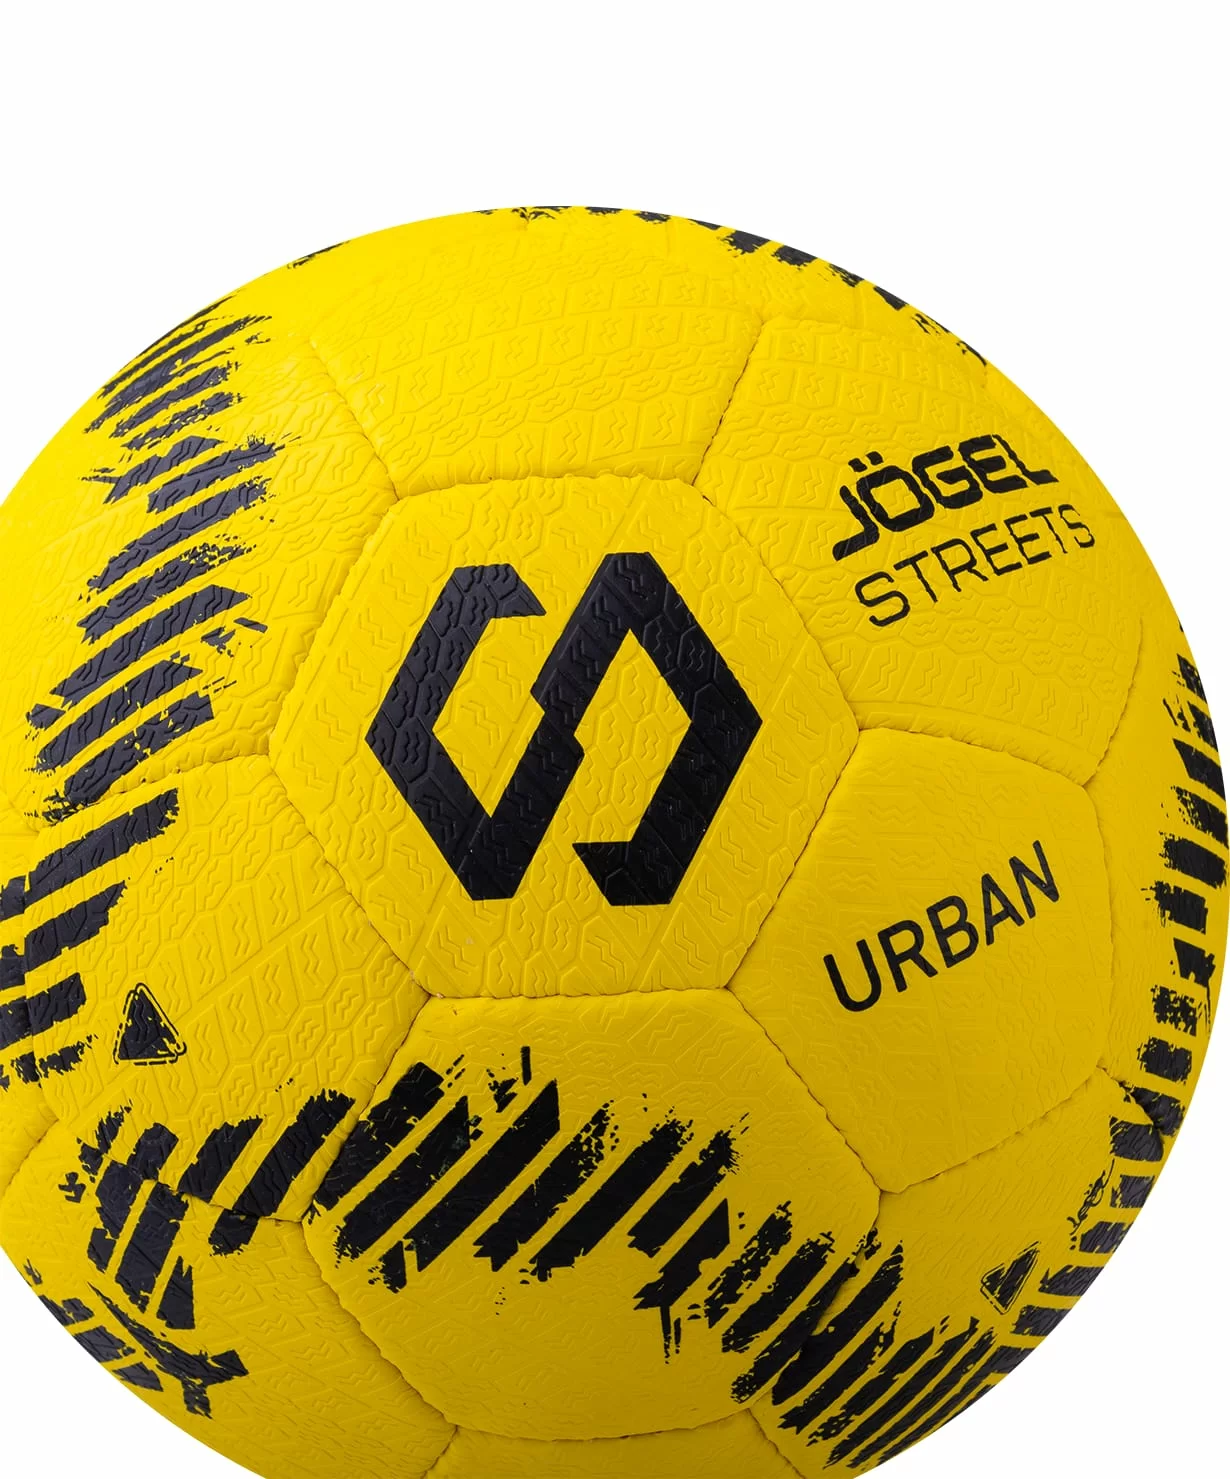 Реальное фото Мяч футбольный Jögel JS-1100 Urban №5 желтый 14246 от магазина СпортСЕ